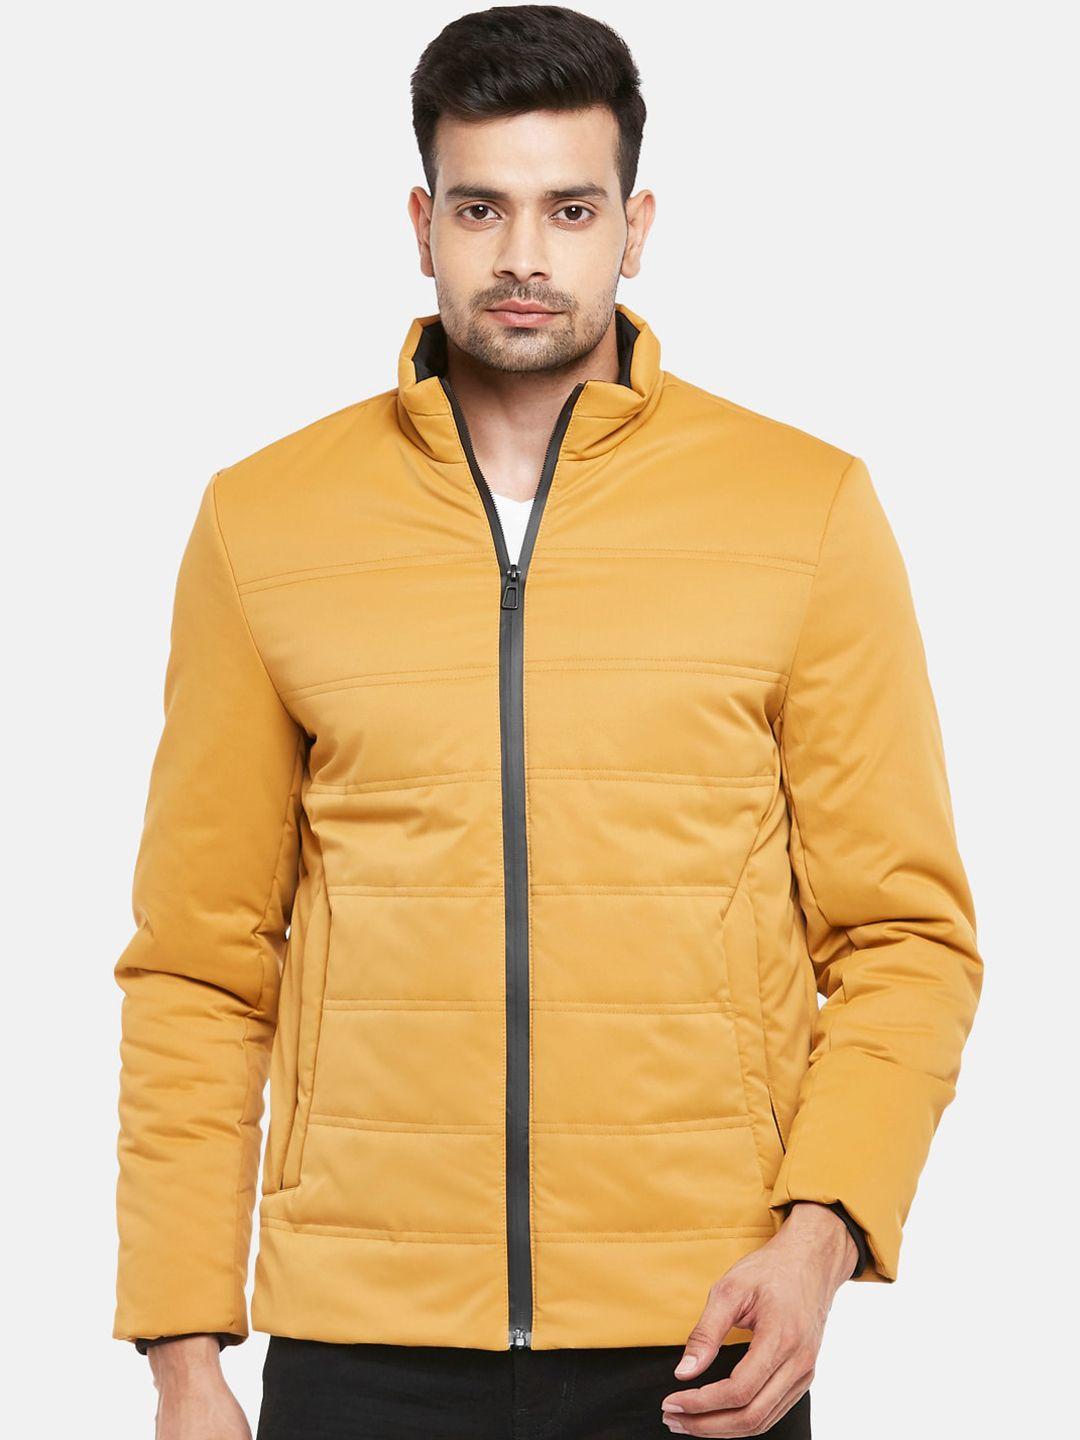 urban-ranger-by-pantaloons-men-mustard-yellow-tailored-jacket